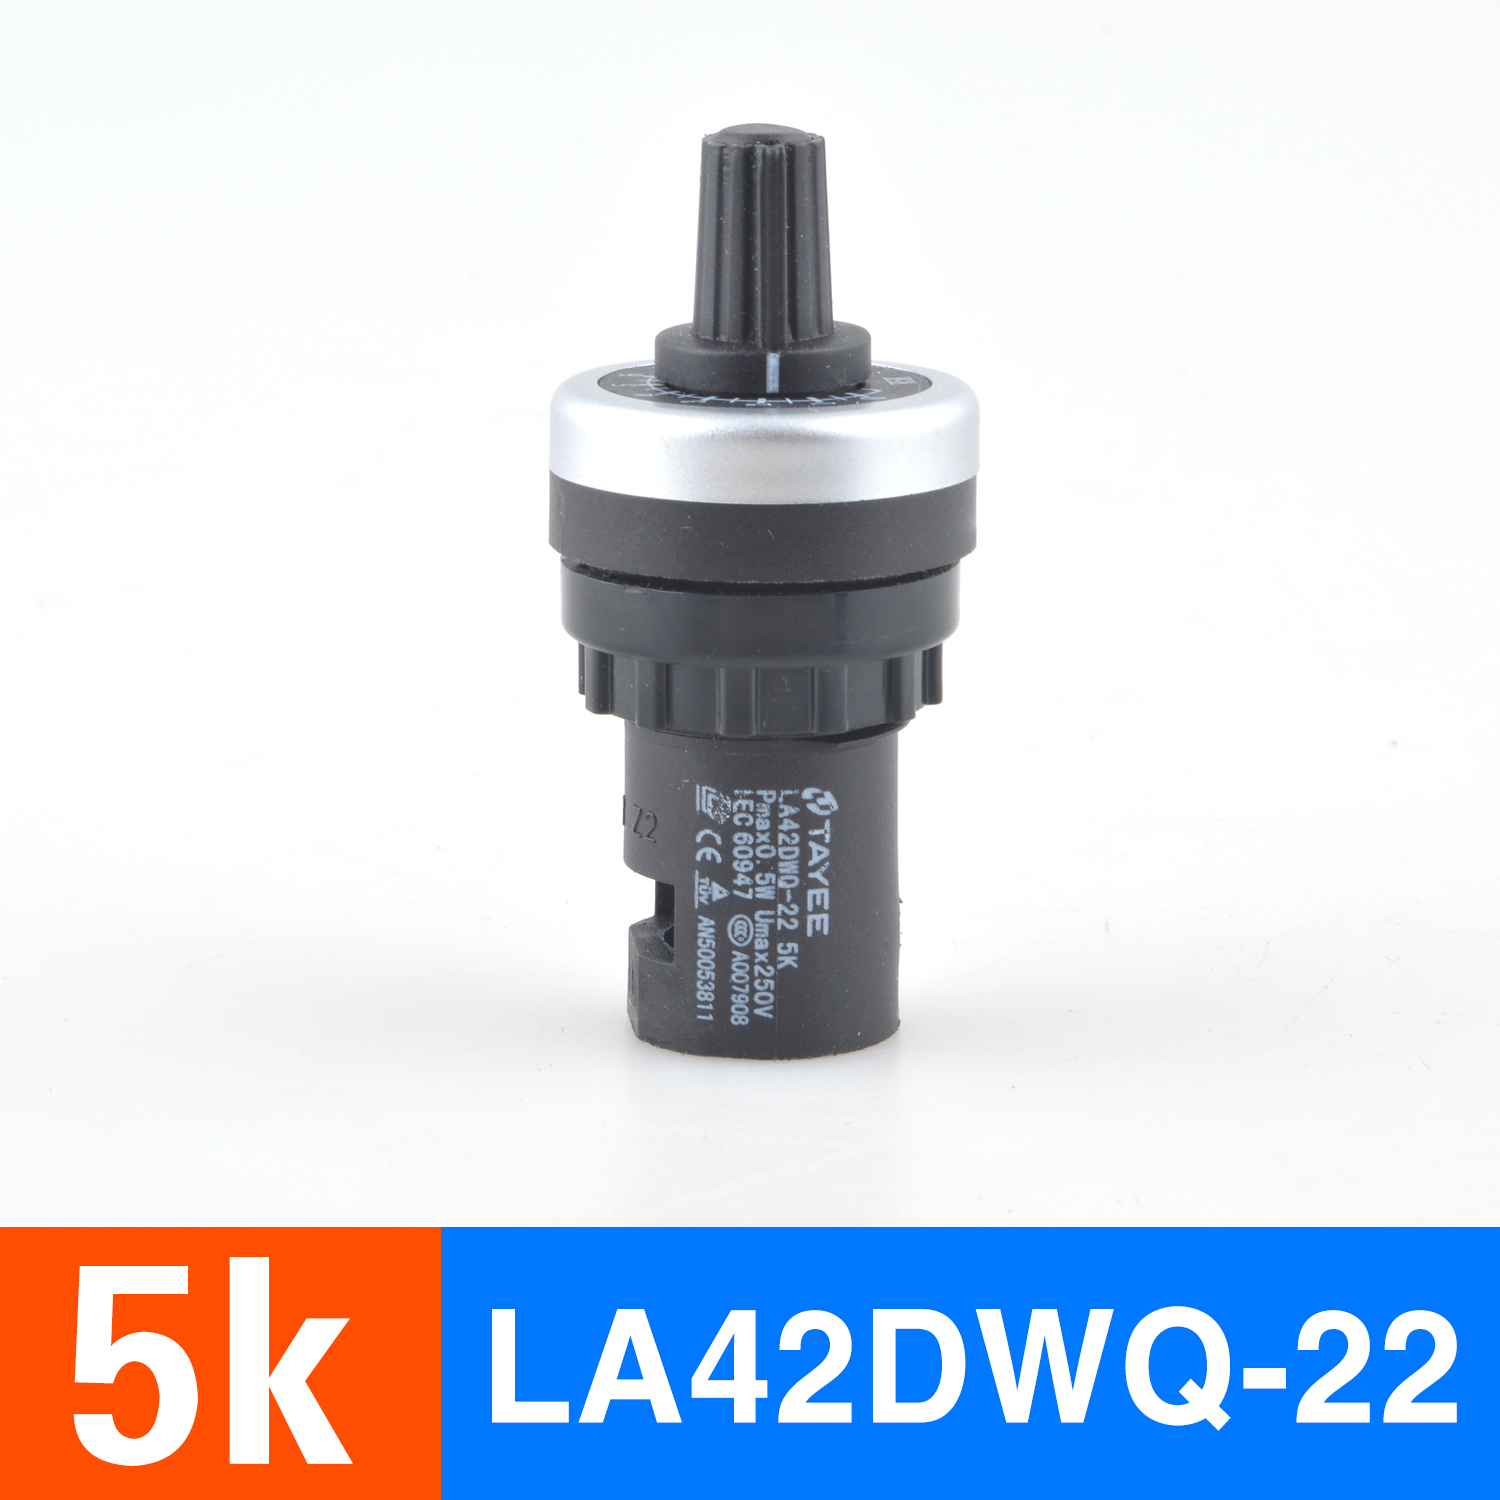 正品5k正品上海天逸变频器调速电位器精密LA42DWQ-22调速器22mm5K10K